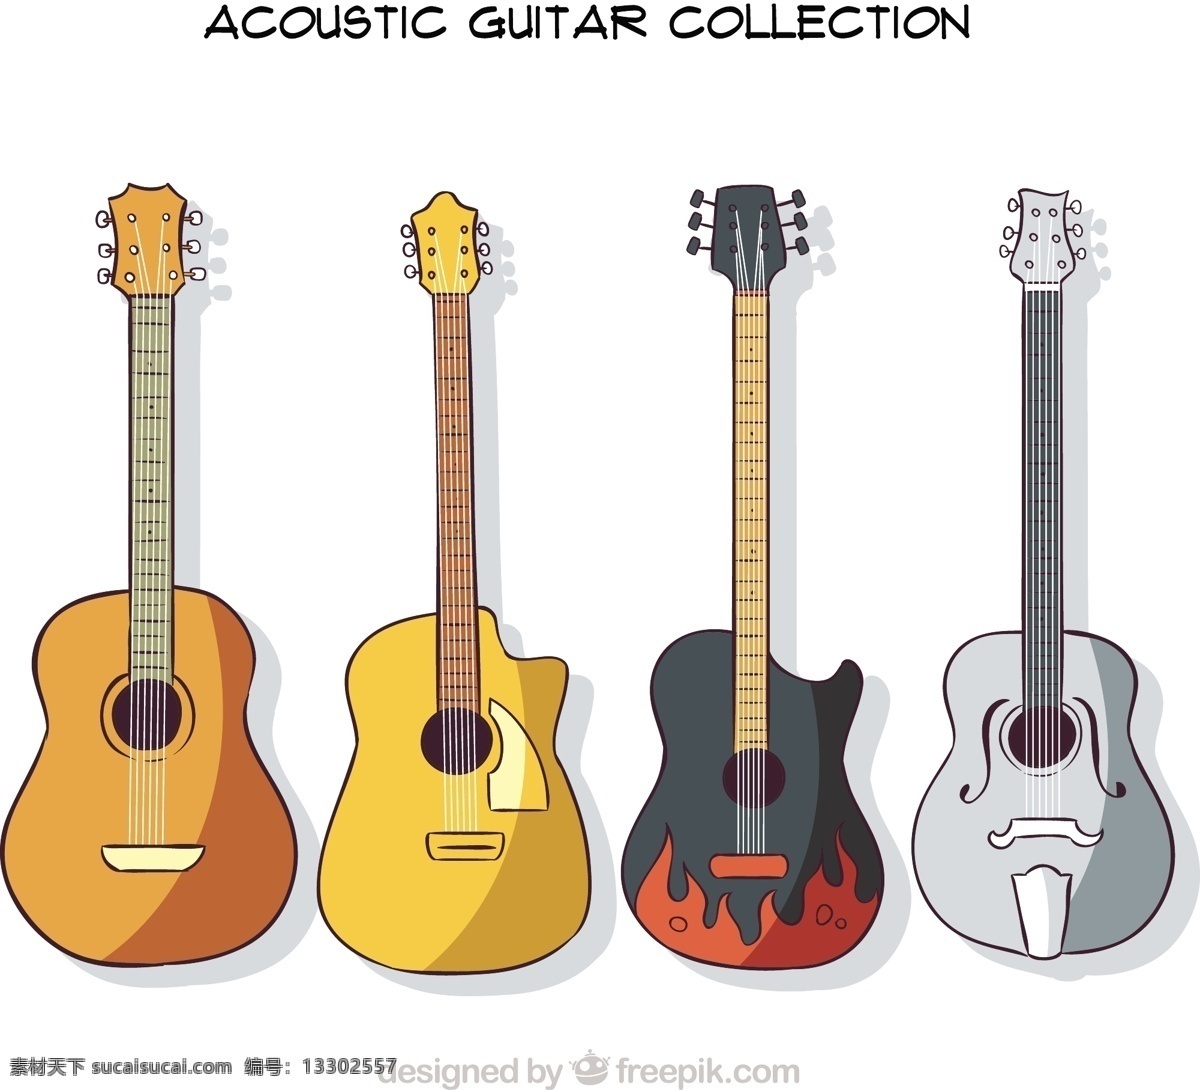 四 支 手绘 吉他 包 音乐方面 声音 音乐 游戏 乐器 画 歌 包装 粗略 仪器 设备 声 吉他的旋律